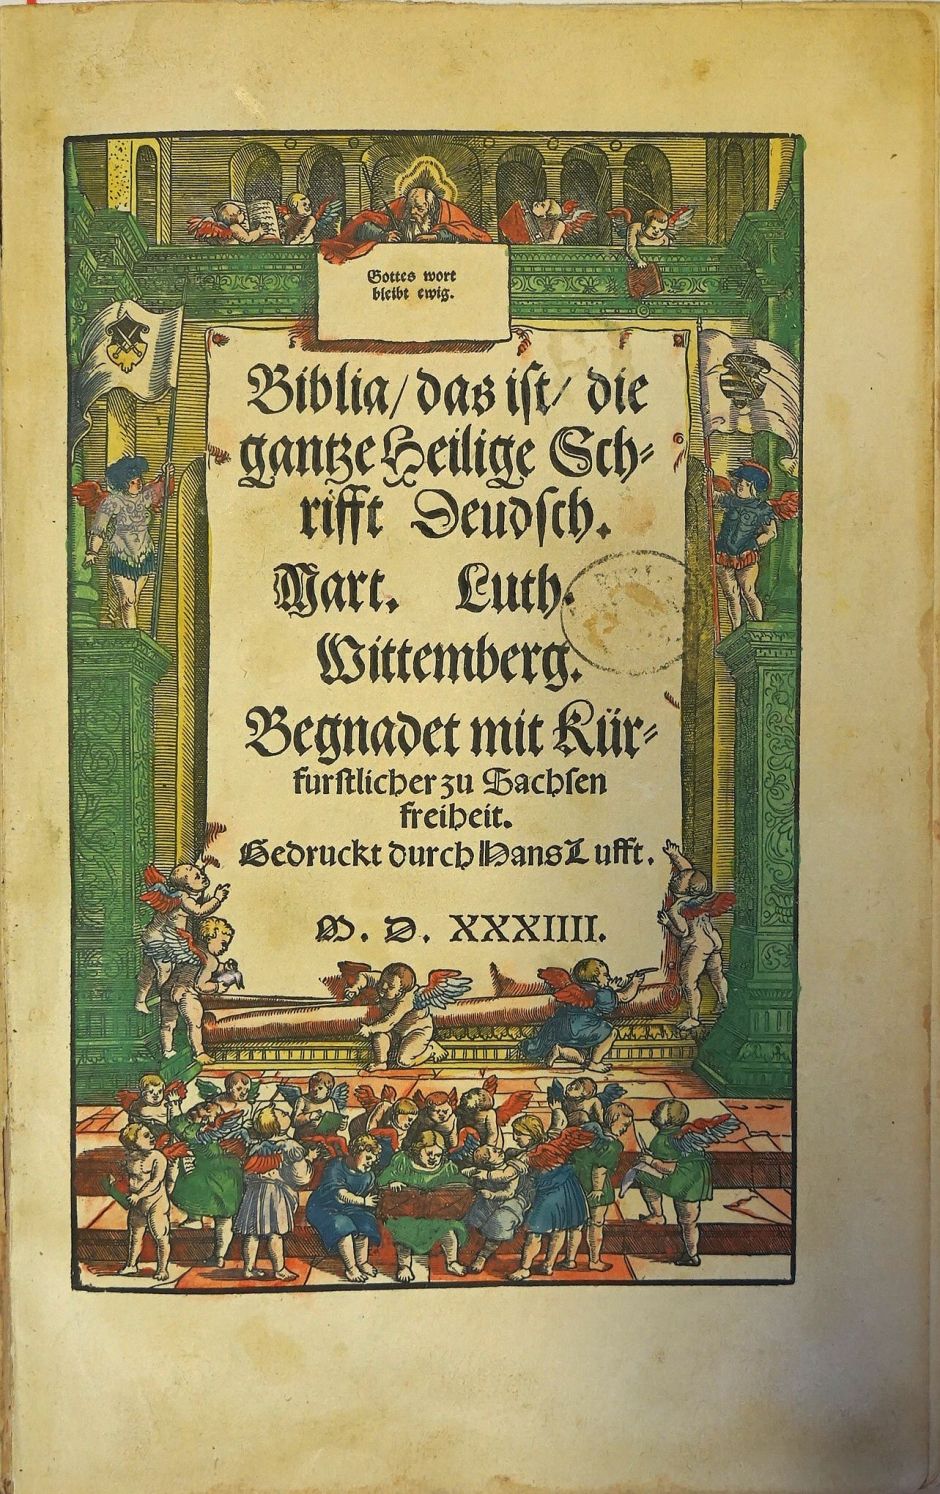 Lot 1397, Auction  115, Biblia germanica, Biblia, das ist ... Beide Bände der Faksimile-Ausgabe 